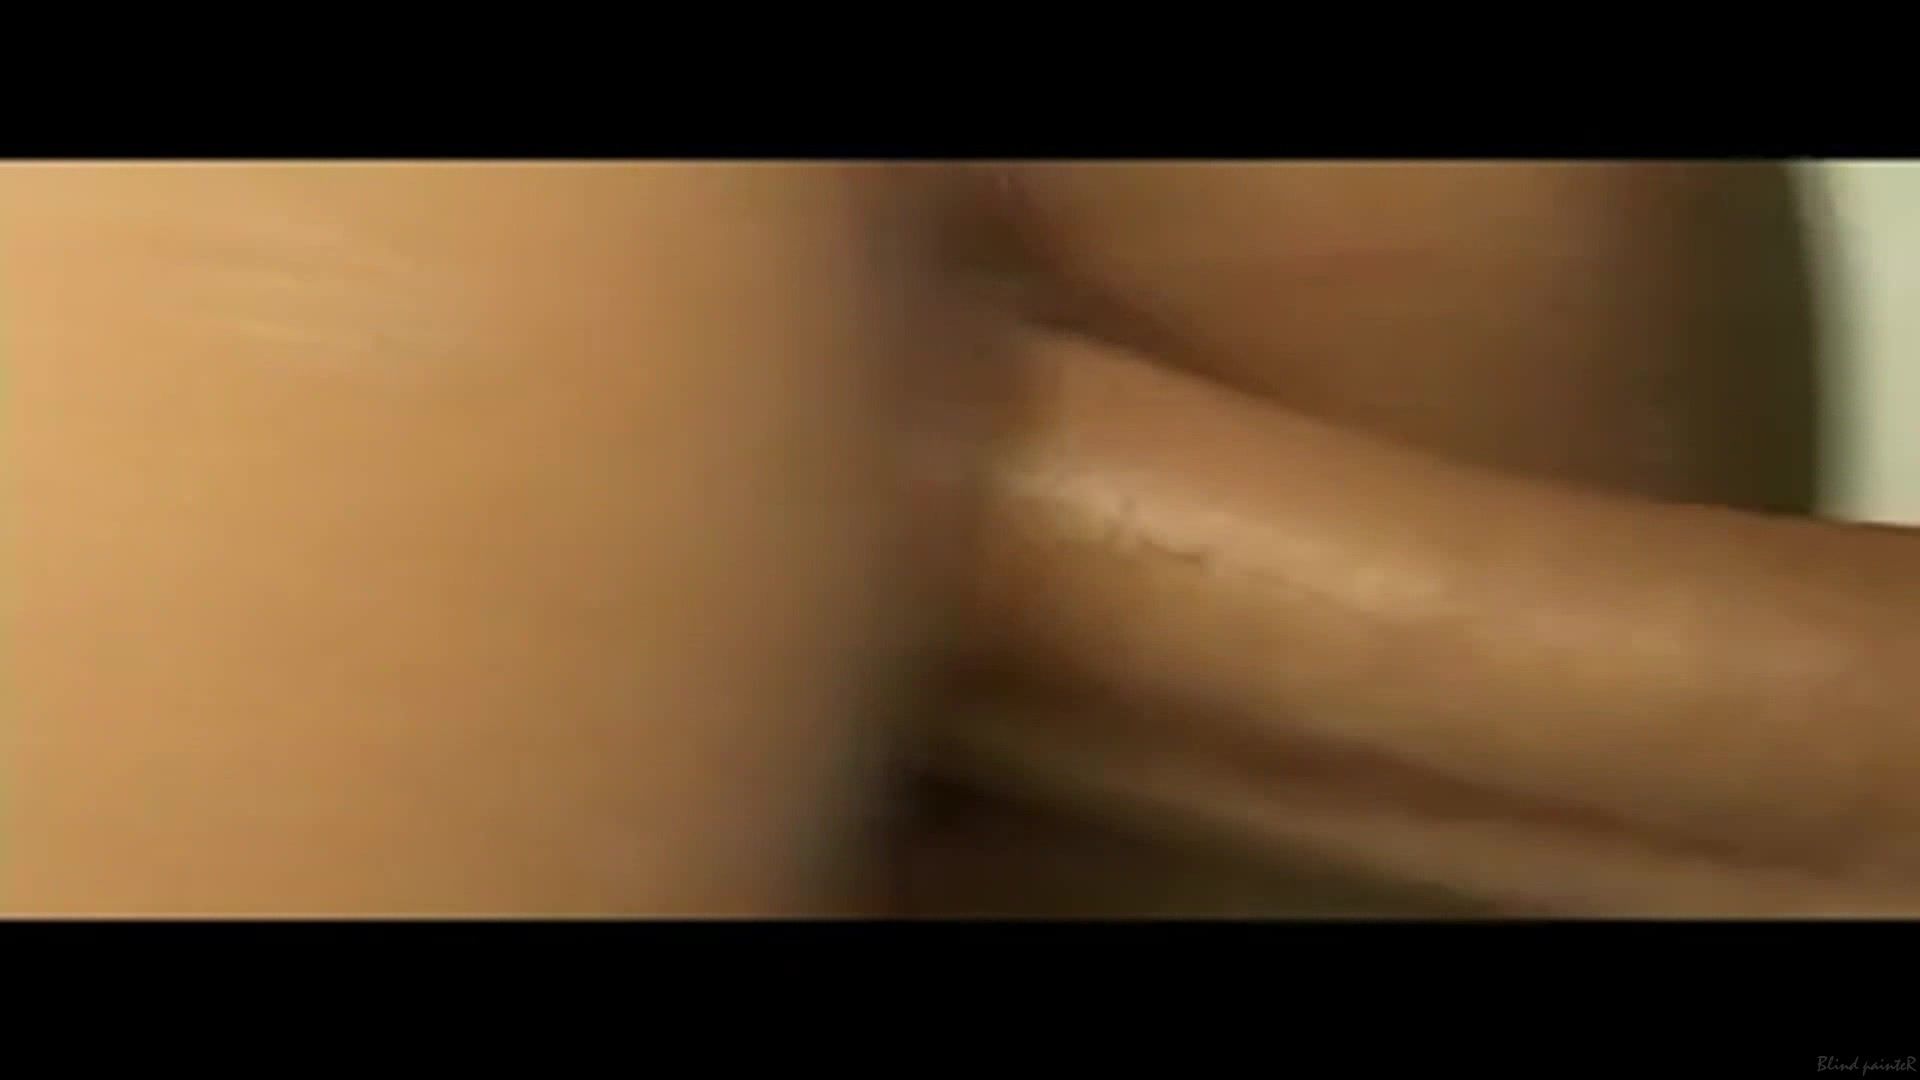 Culo Sex video Clara Morgane nude - Caught by Paparazzi 19yo